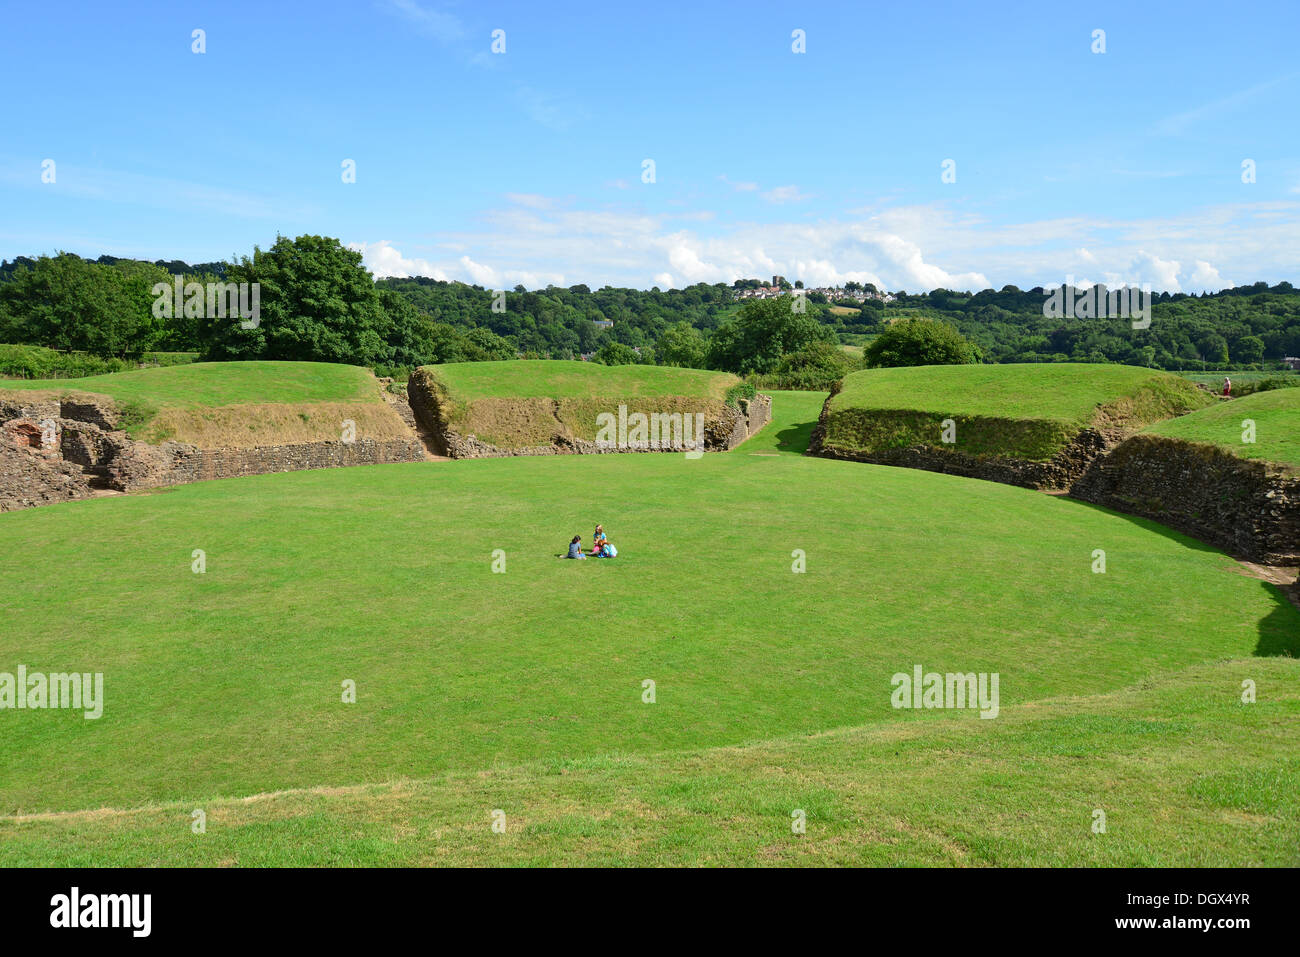 Vestiges de l'amphithéâtre romain, Caerleon, ville de Newport (Casnewydd), pays de Galles (Cymru), Royaume-Uni Banque D'Images